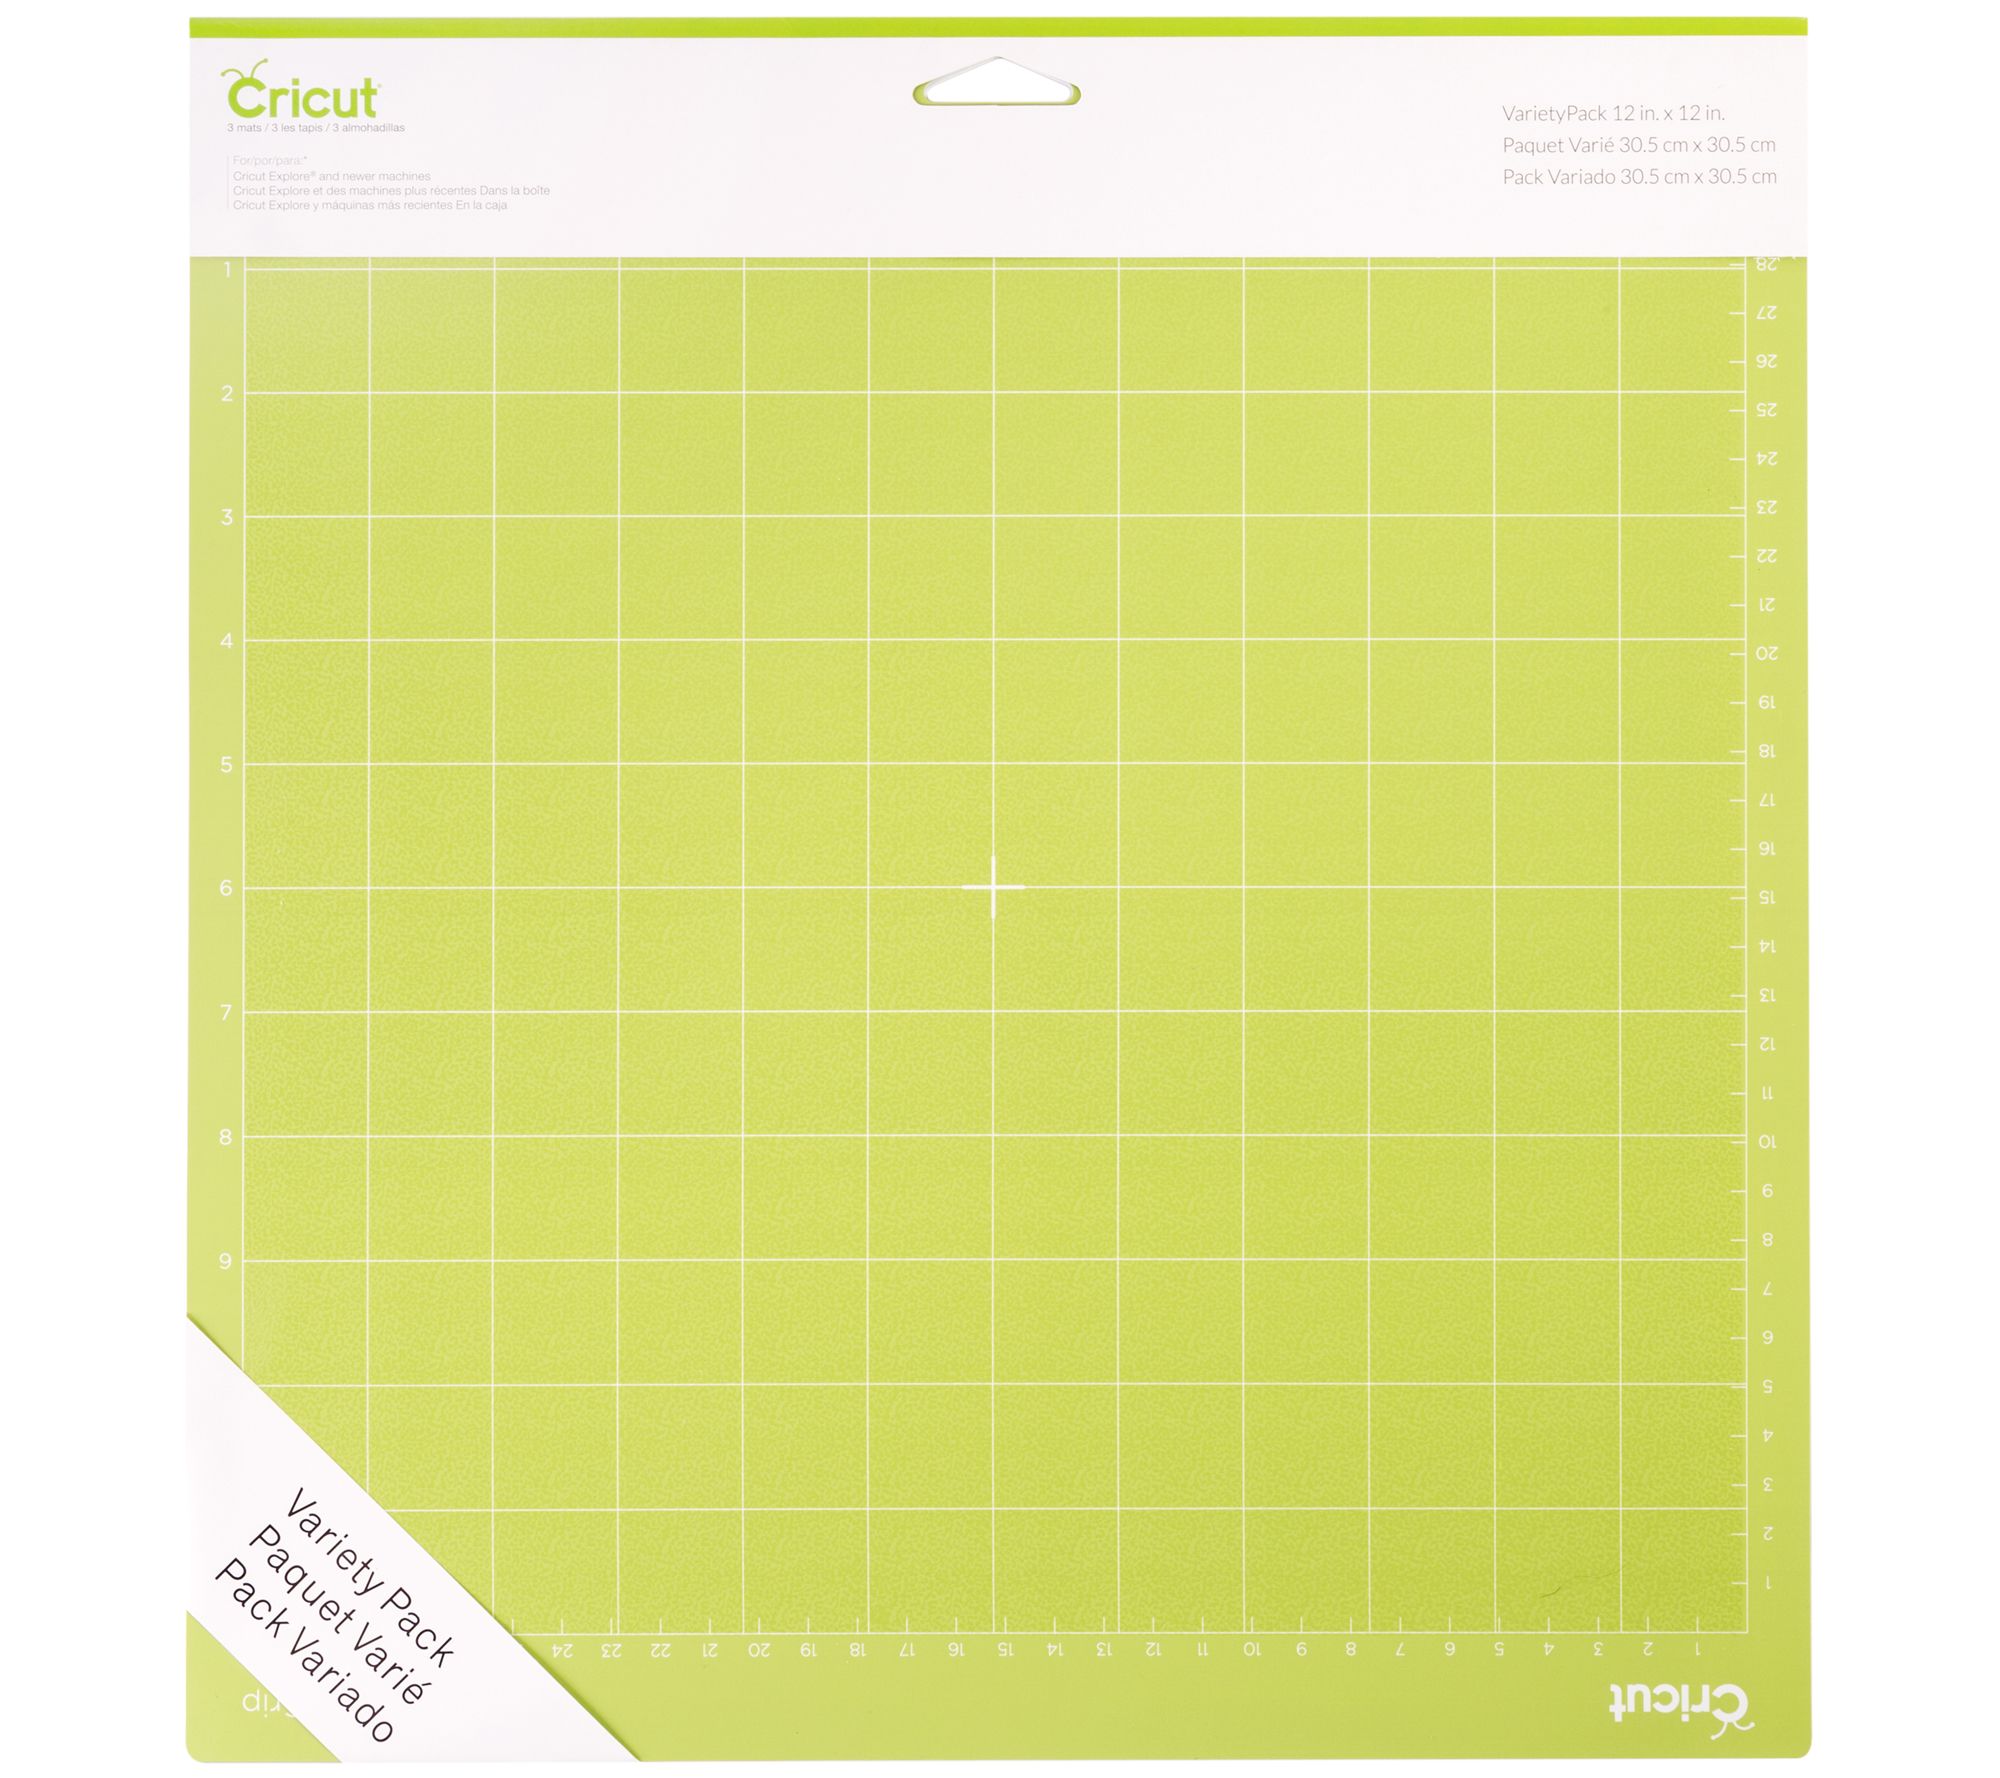 Cricut 12 x 24 Cutting Mat Variety Pack - Setof 3 